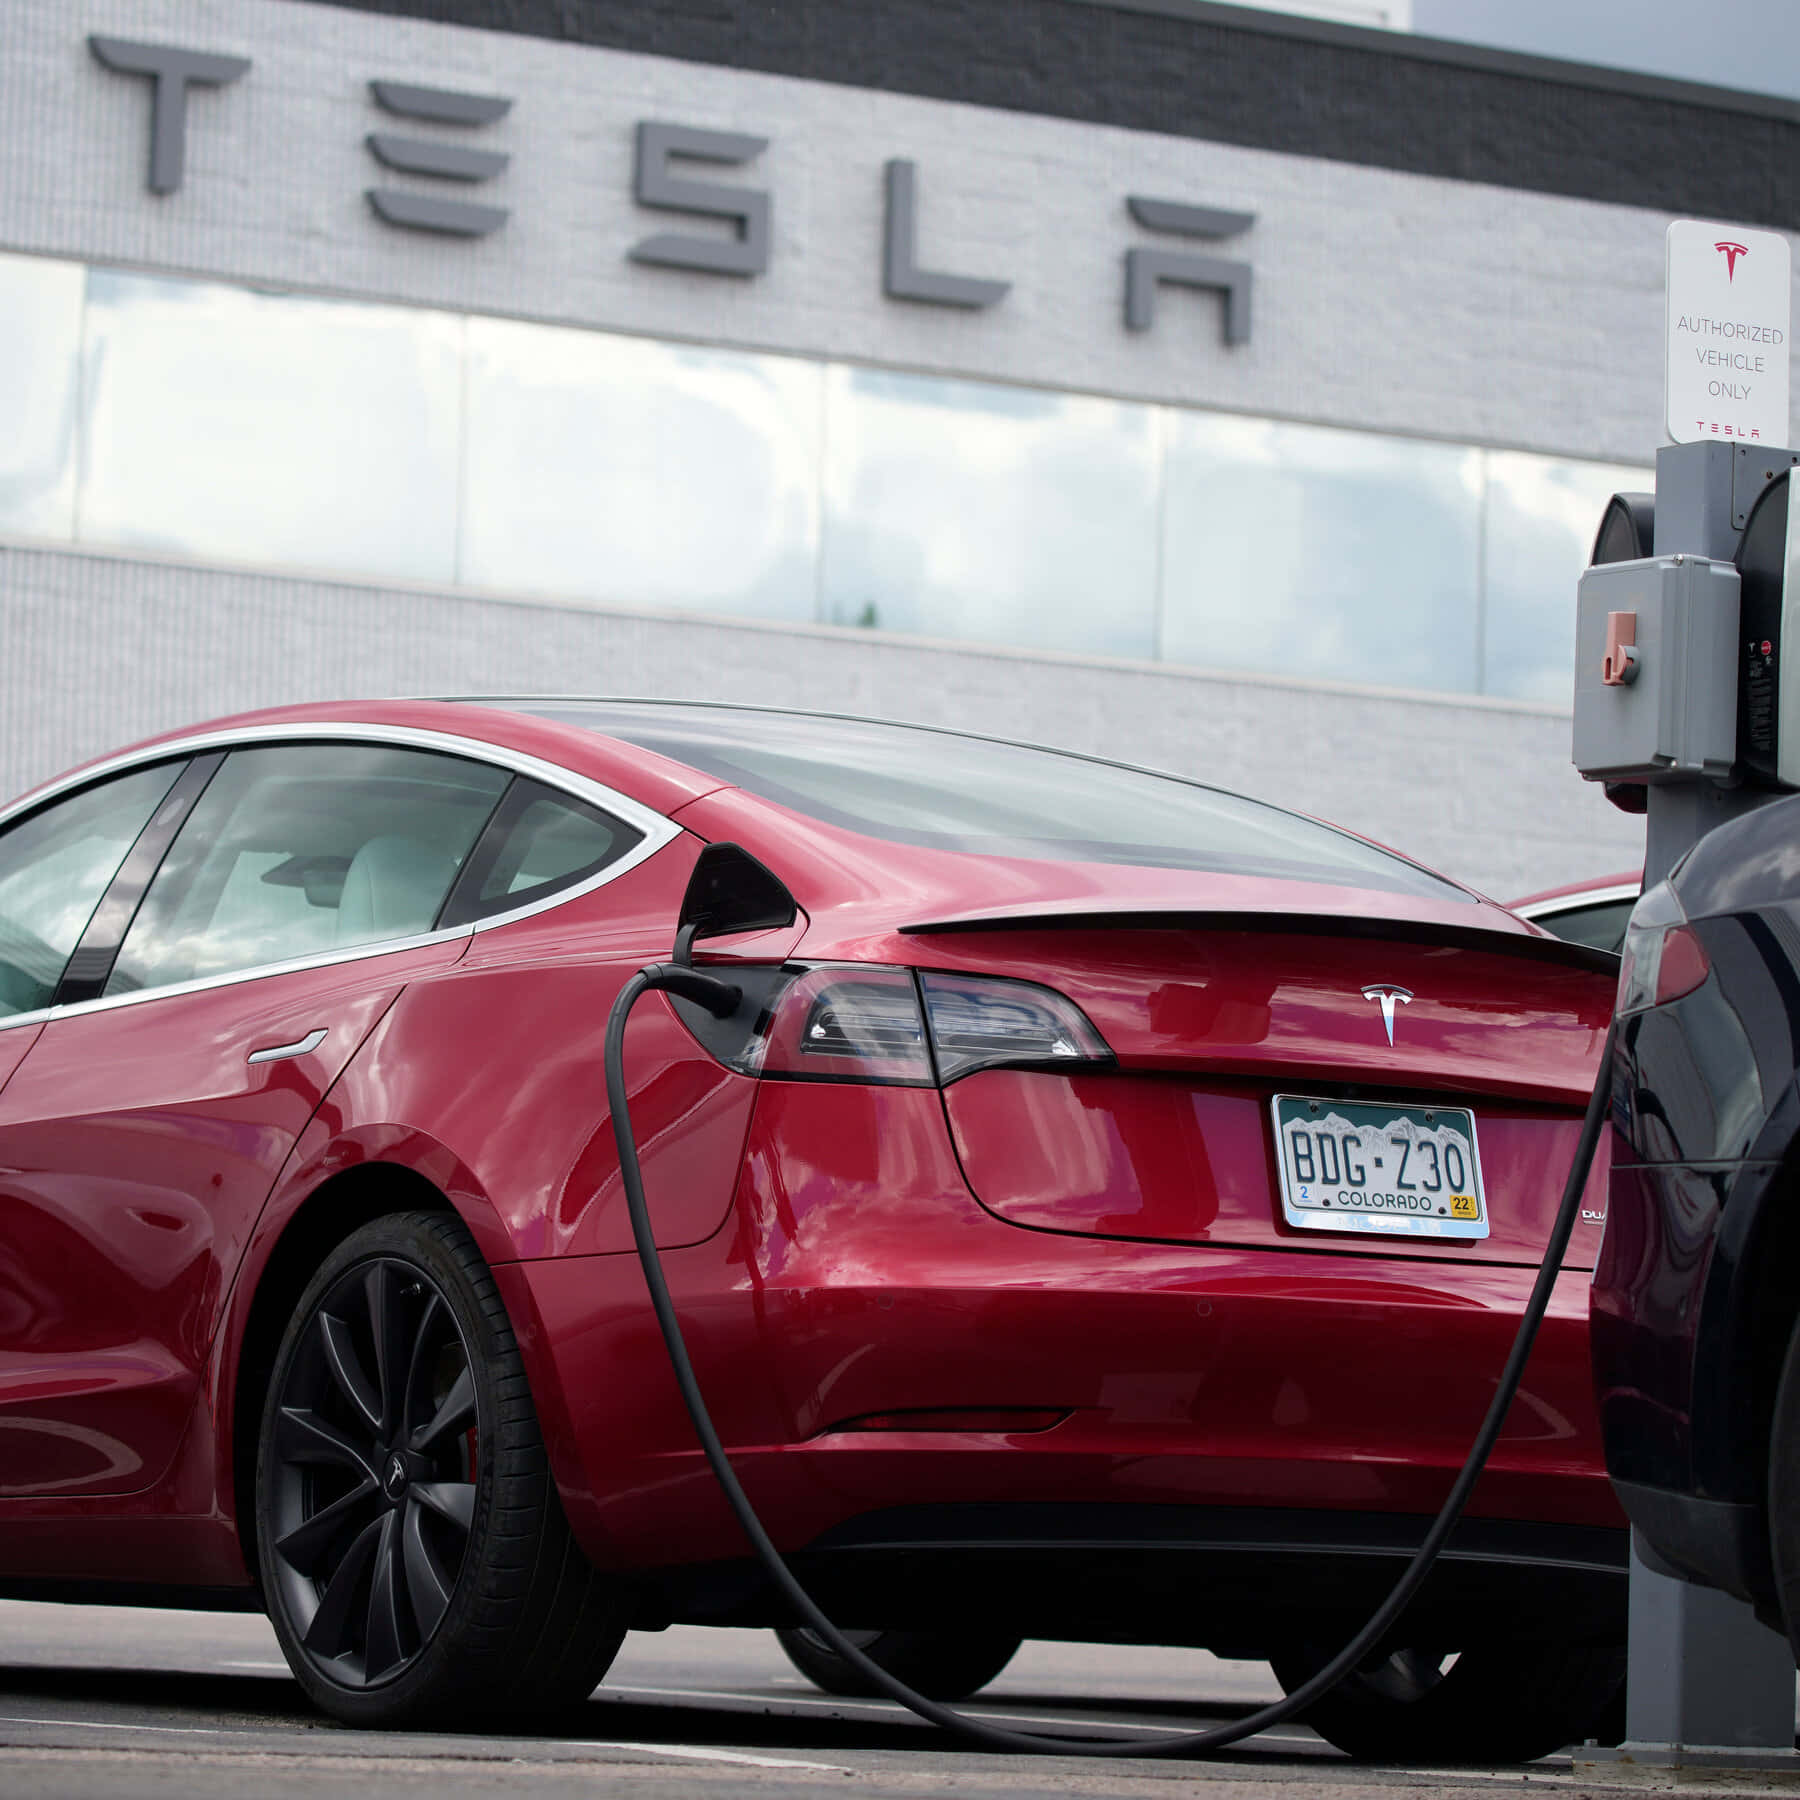 Immaginedi Una Tesla Car A Benzina.